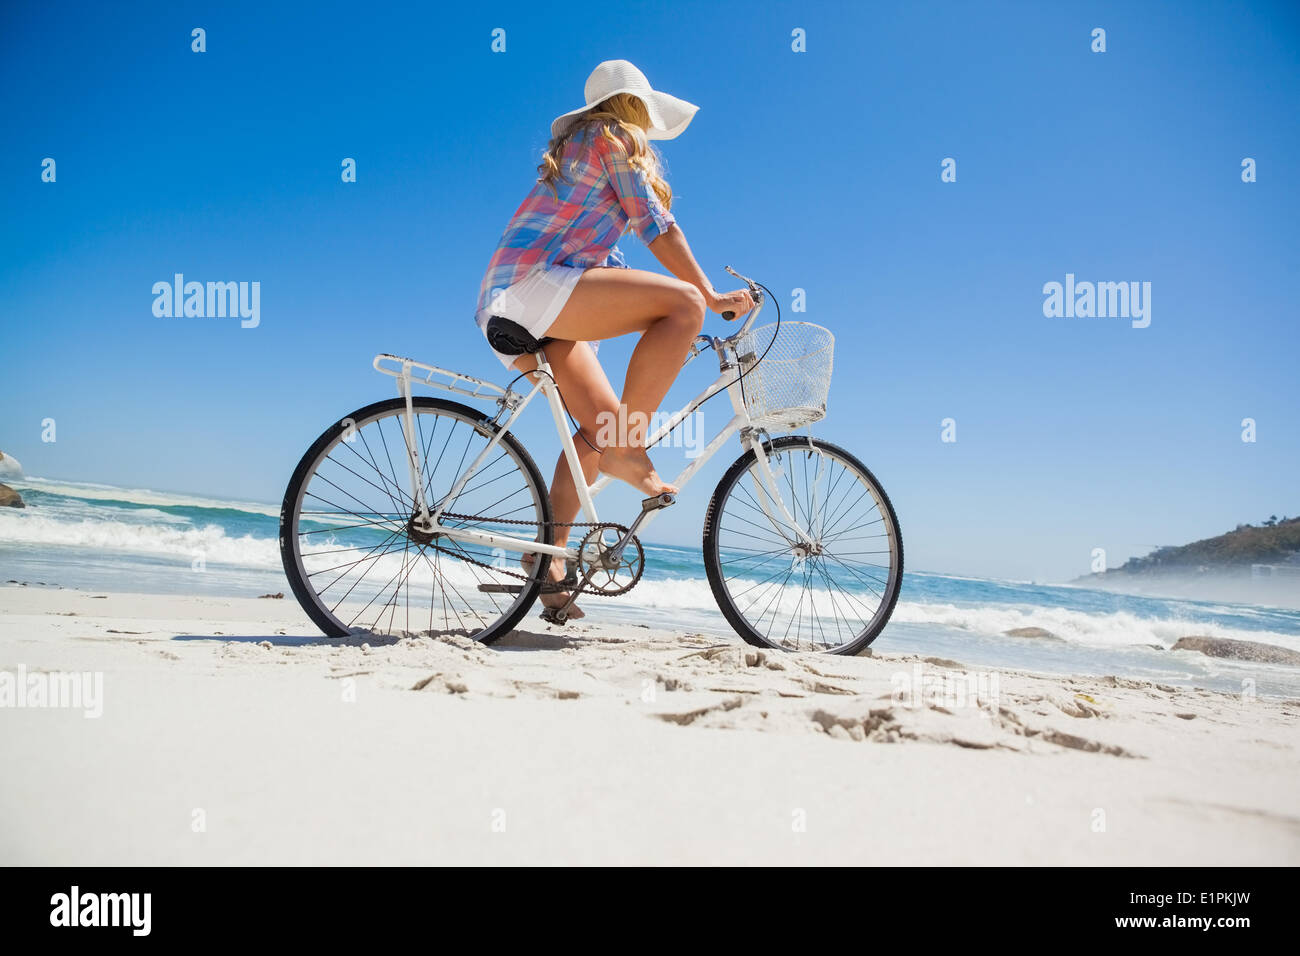 Jolie blonde sur un vélo à la plage Banque D'Images